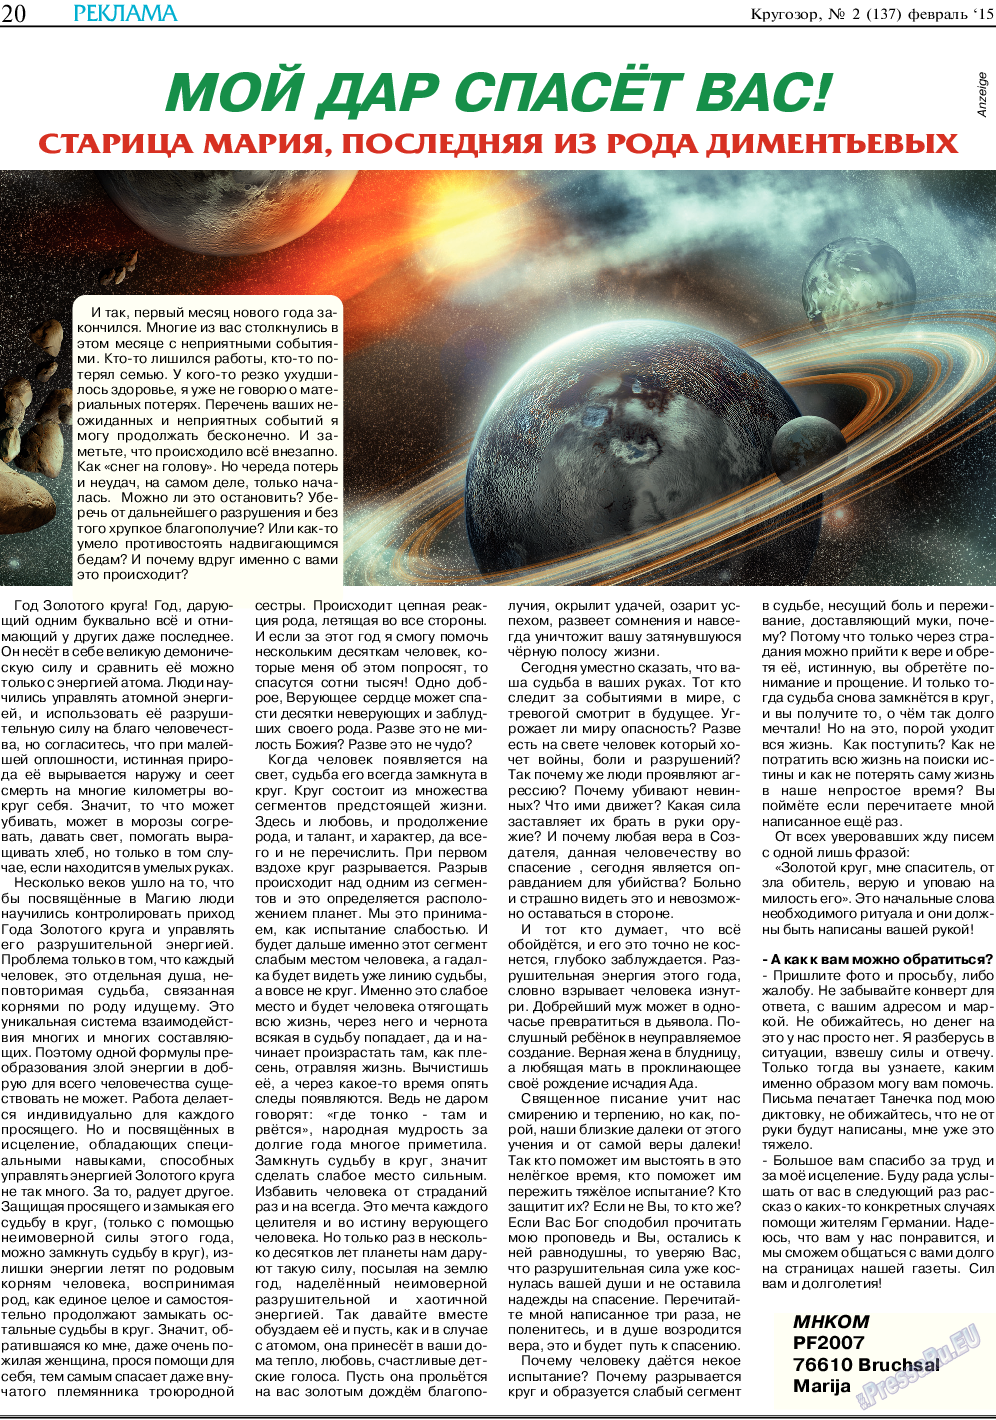 Кругозор, газета. 2015 №2 стр.20